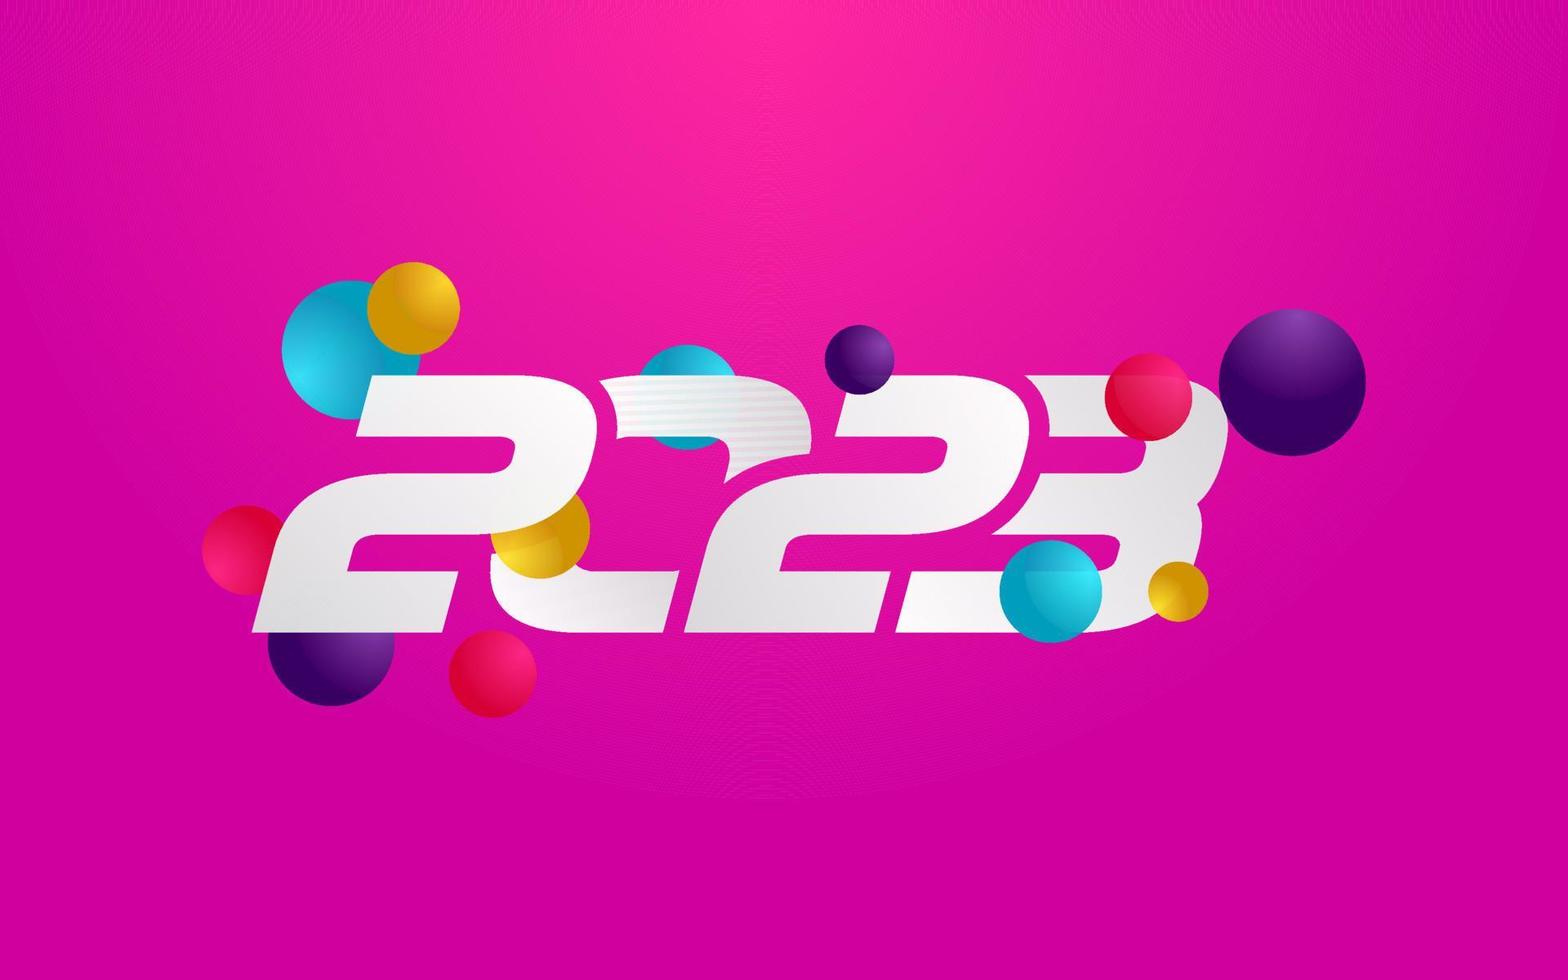 nieuw 2023 jaar typografie ontwerp. 2023 getallen logotype illustratie vector